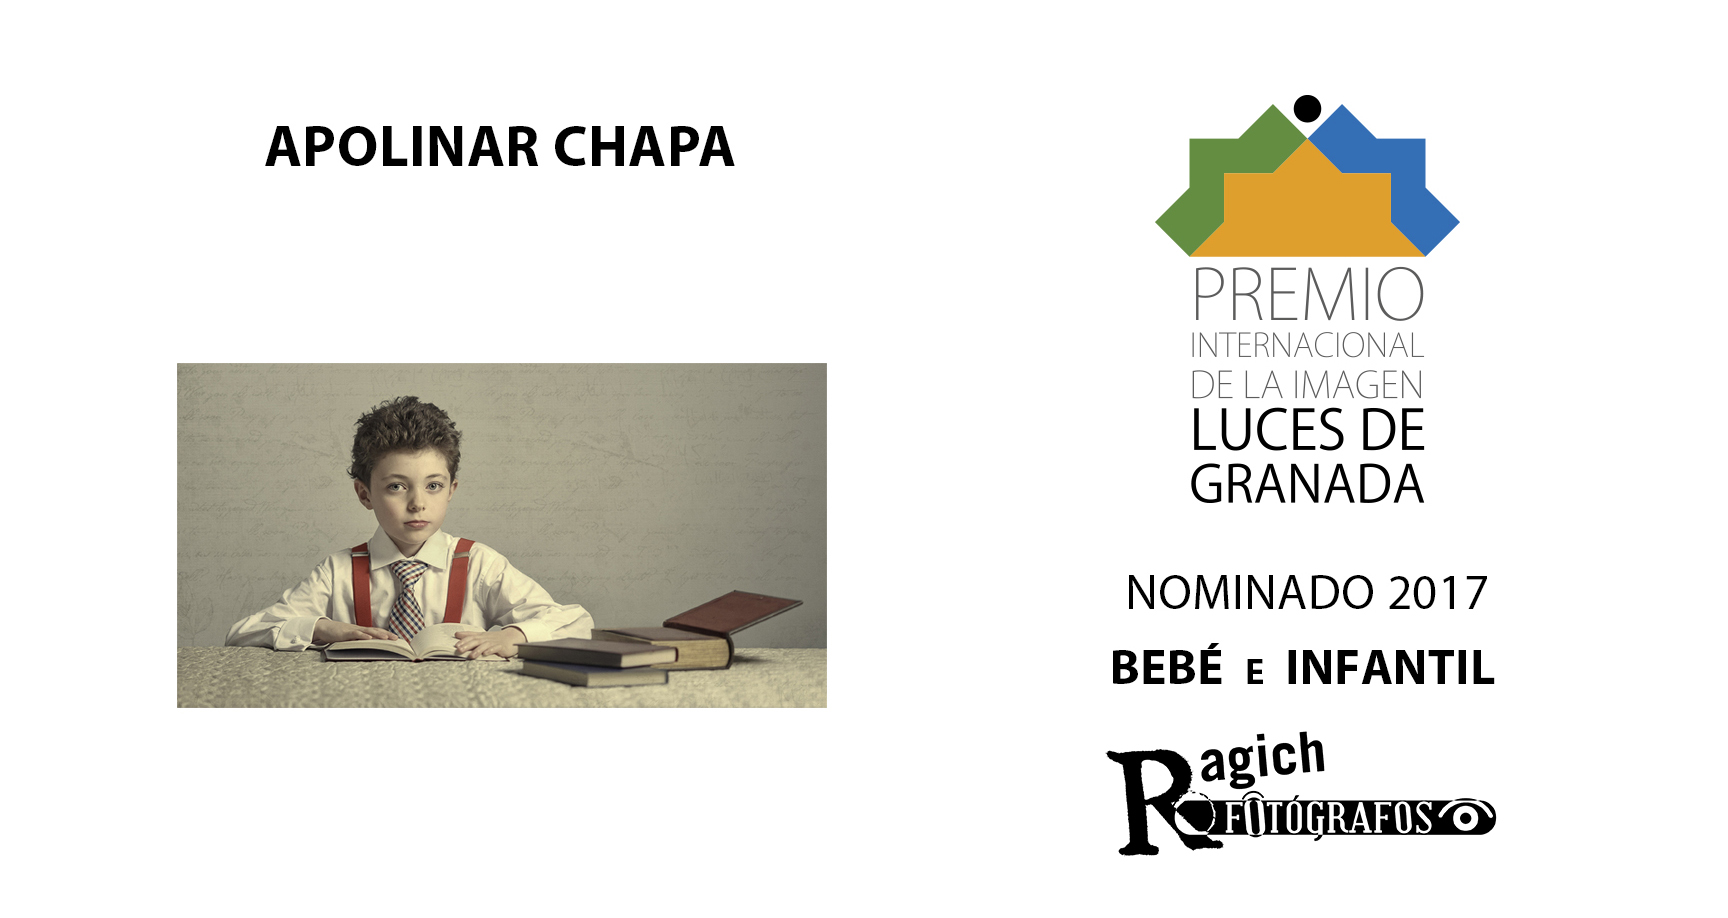 Ragich Fotógrafos Cáceres - nominados_lucesdegranada_2017_bebe_infantil_ragich_fotografos_caceres.jpg